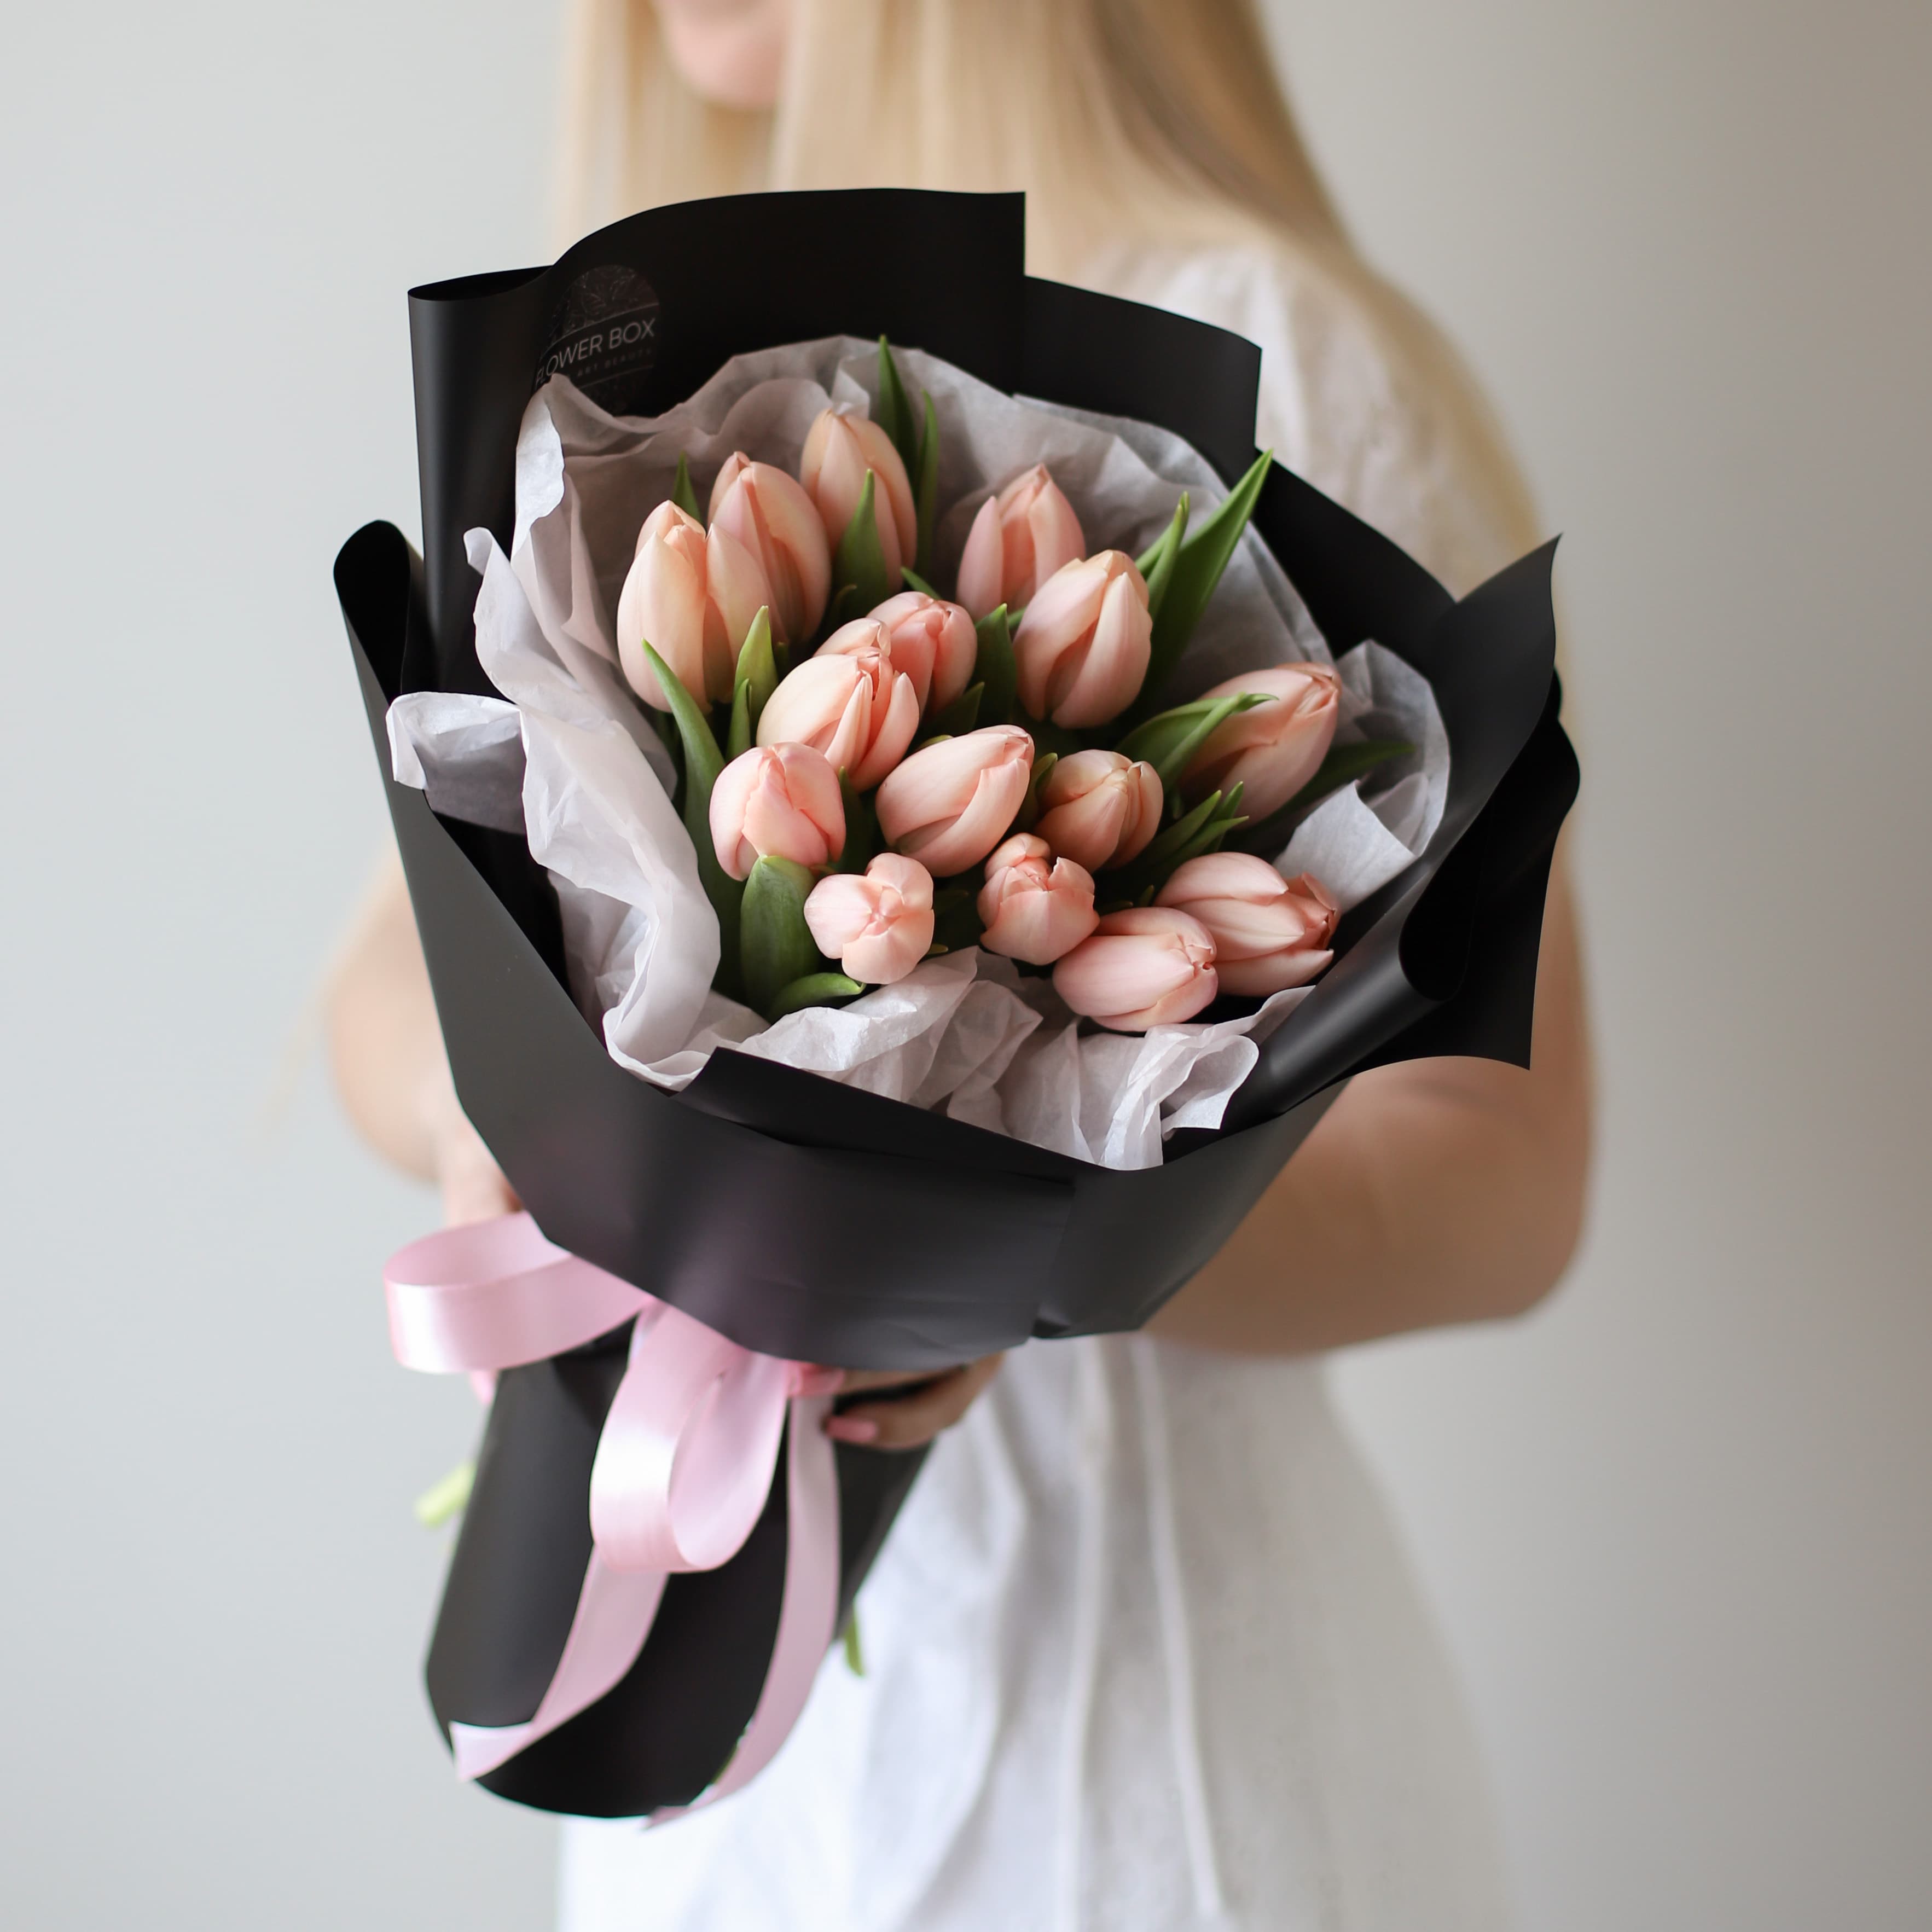 Лососевые тюльпаны голландские в черном оформлении (15 шт) №1593 - Фото 2